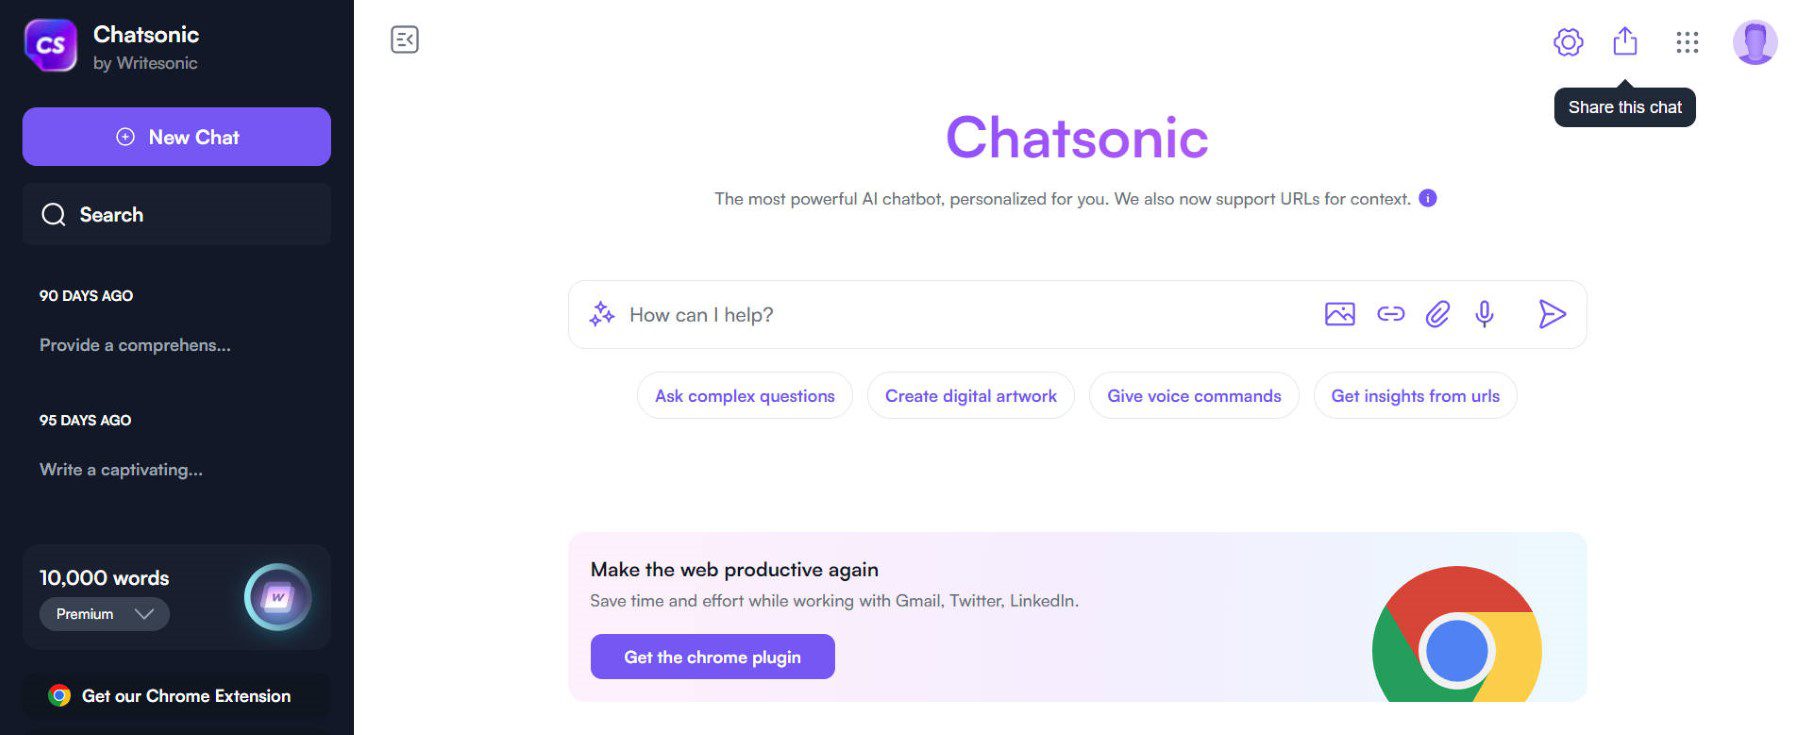 Chatsonic Chat Interface Screenshot